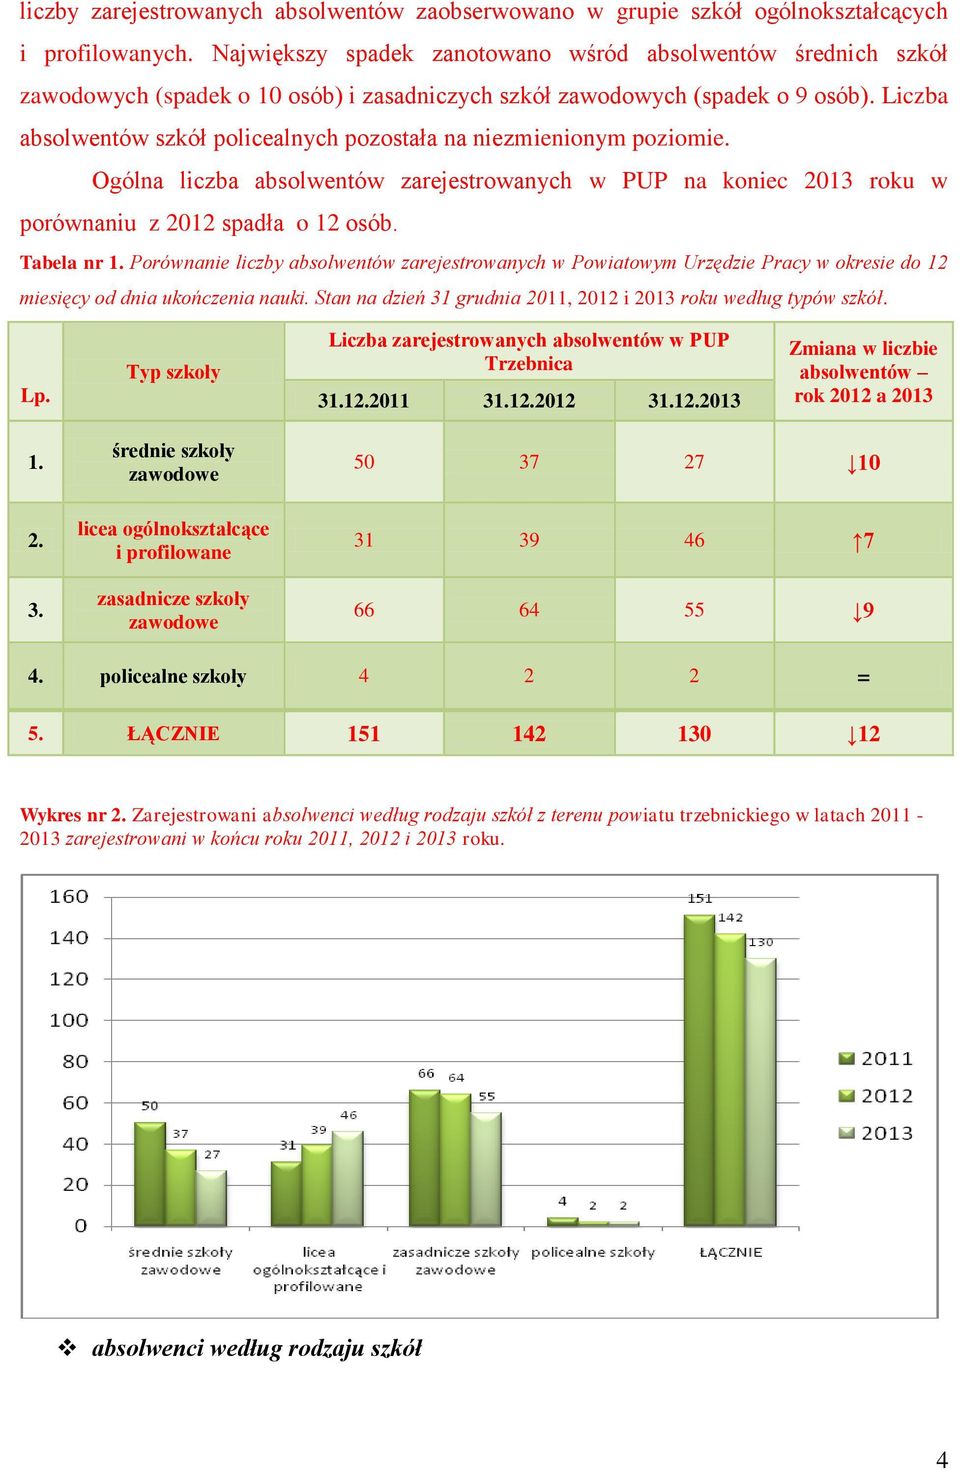 Liczba absolwentów szkół policealnych pozostała na niezmienionym poziomie. Ogólna liczba absolwentów zarejestrowanych w PUP na koniec 2013 roku w porównaniu z 2012 spadła o 12 osób. Tabela nr 1.